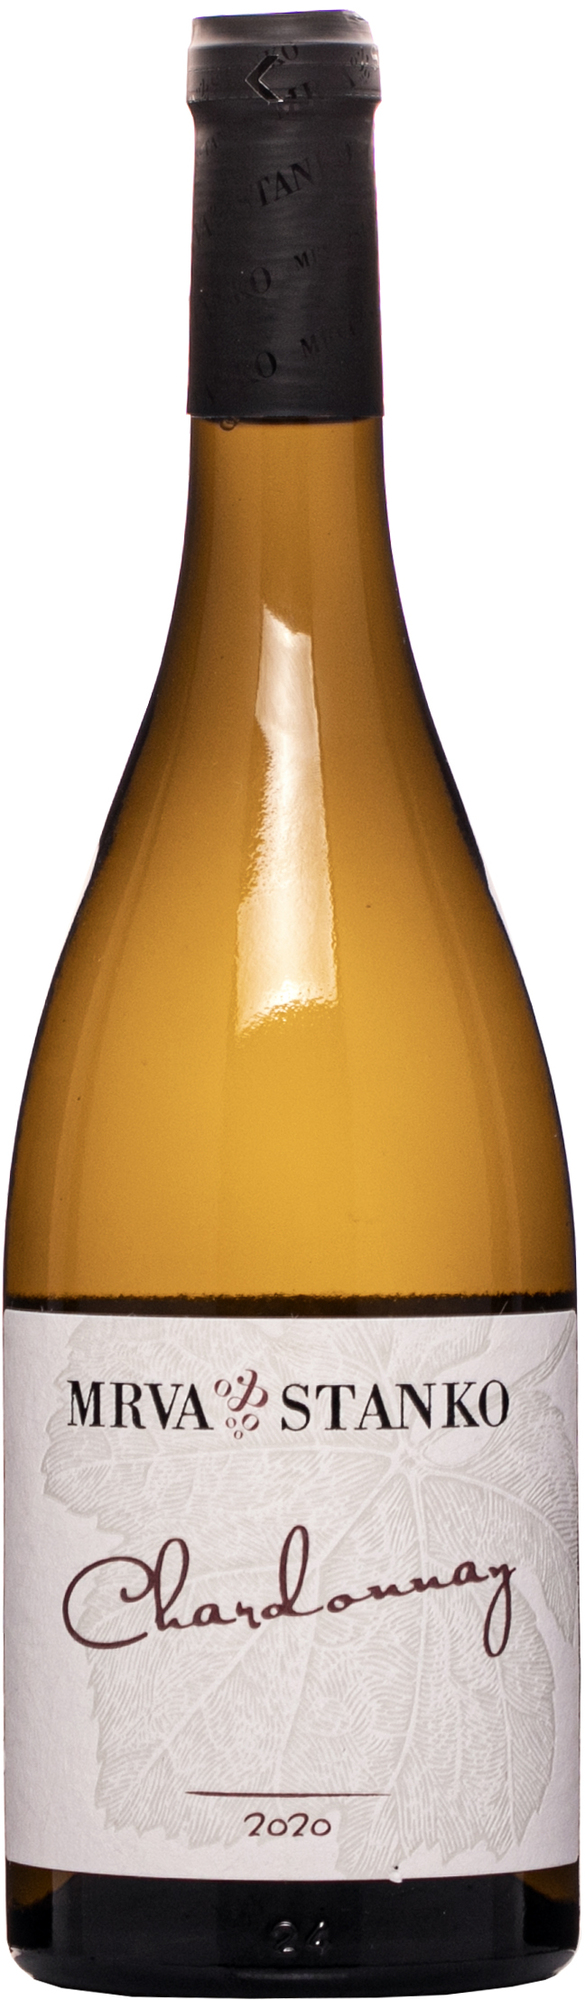 Mrva & Stanko Chardonnay 2020 12,5% 0,75l (čistá fľaša)